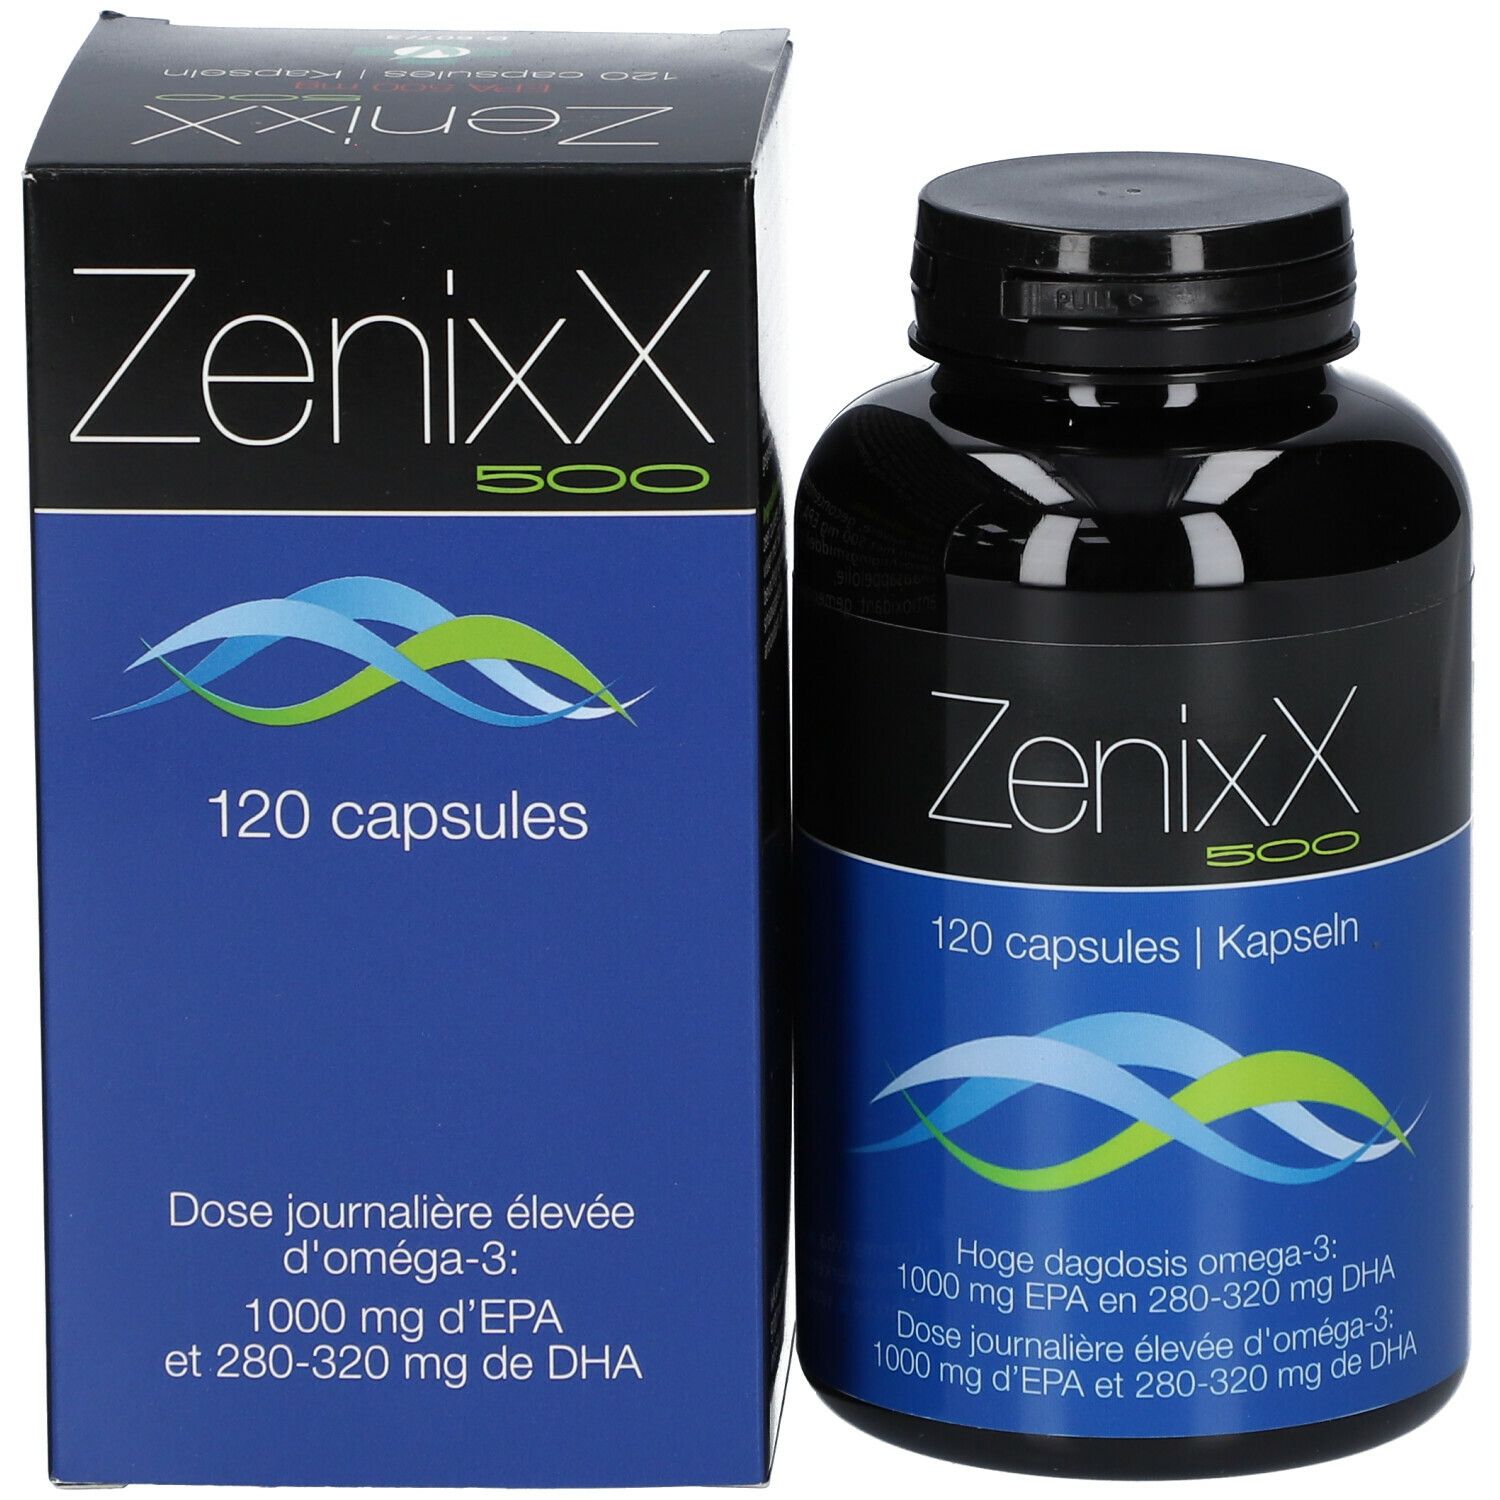 ZenixX 500